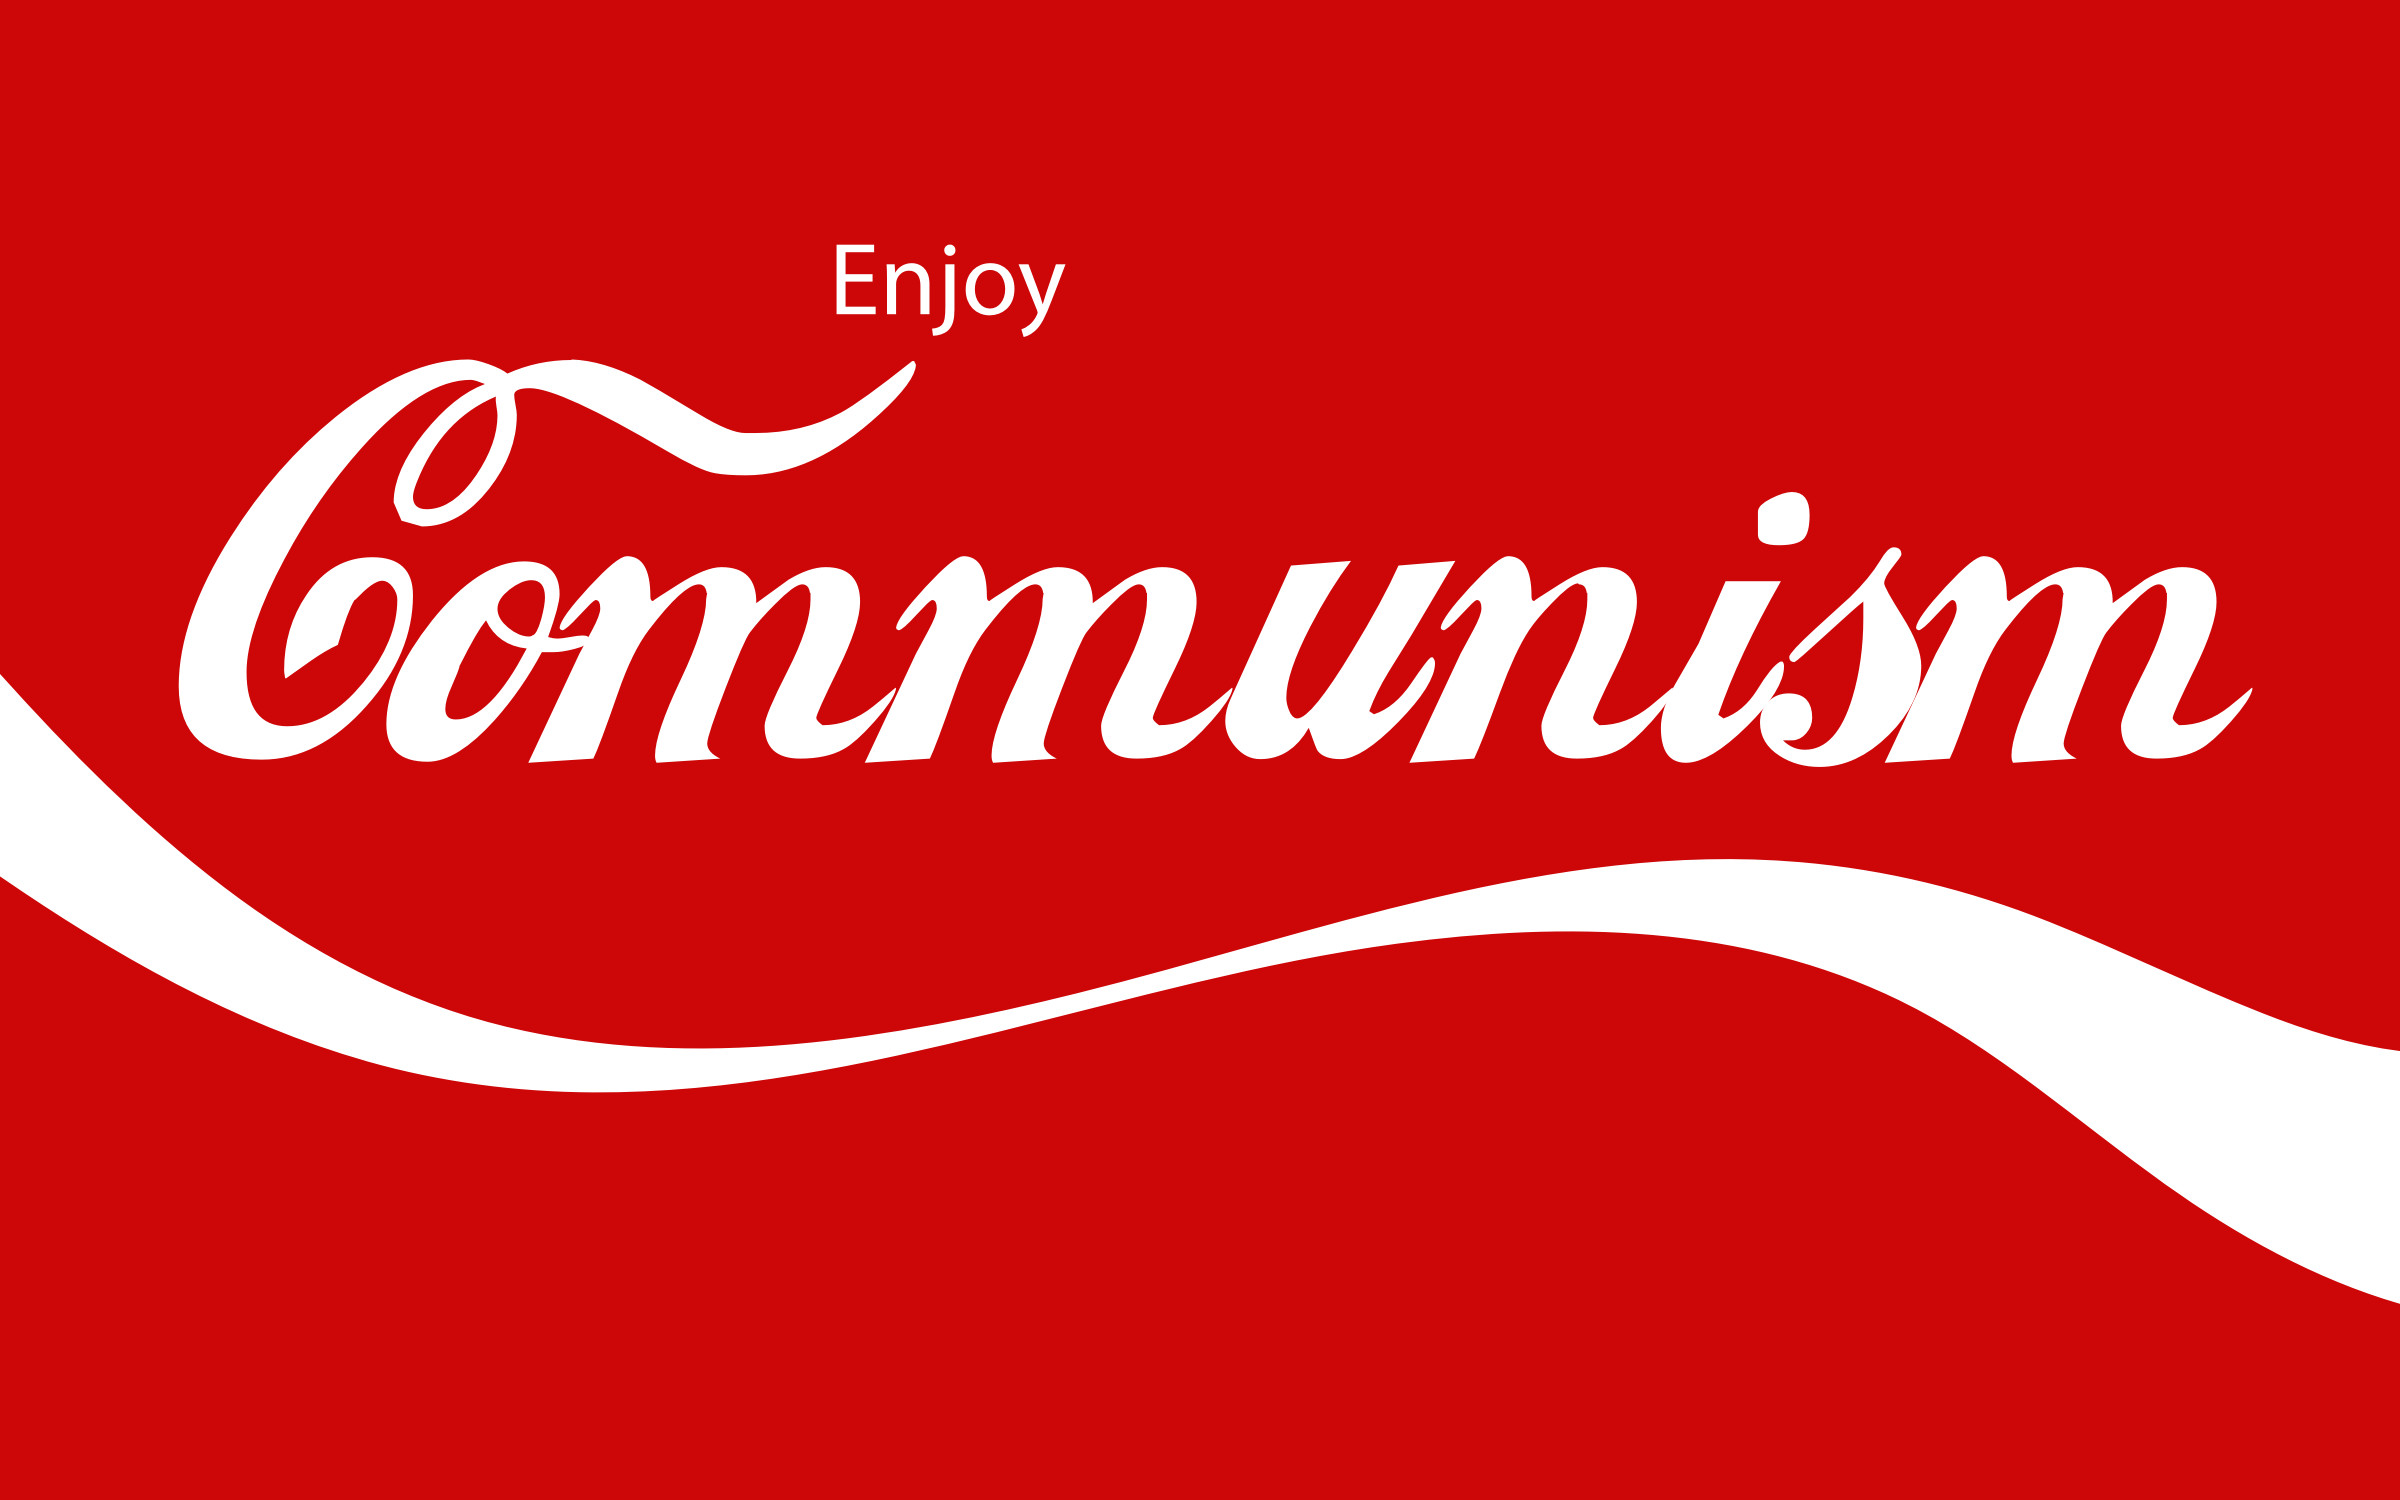 Data-src - Coca Cola Enjoy Communism - HD Wallpaper 